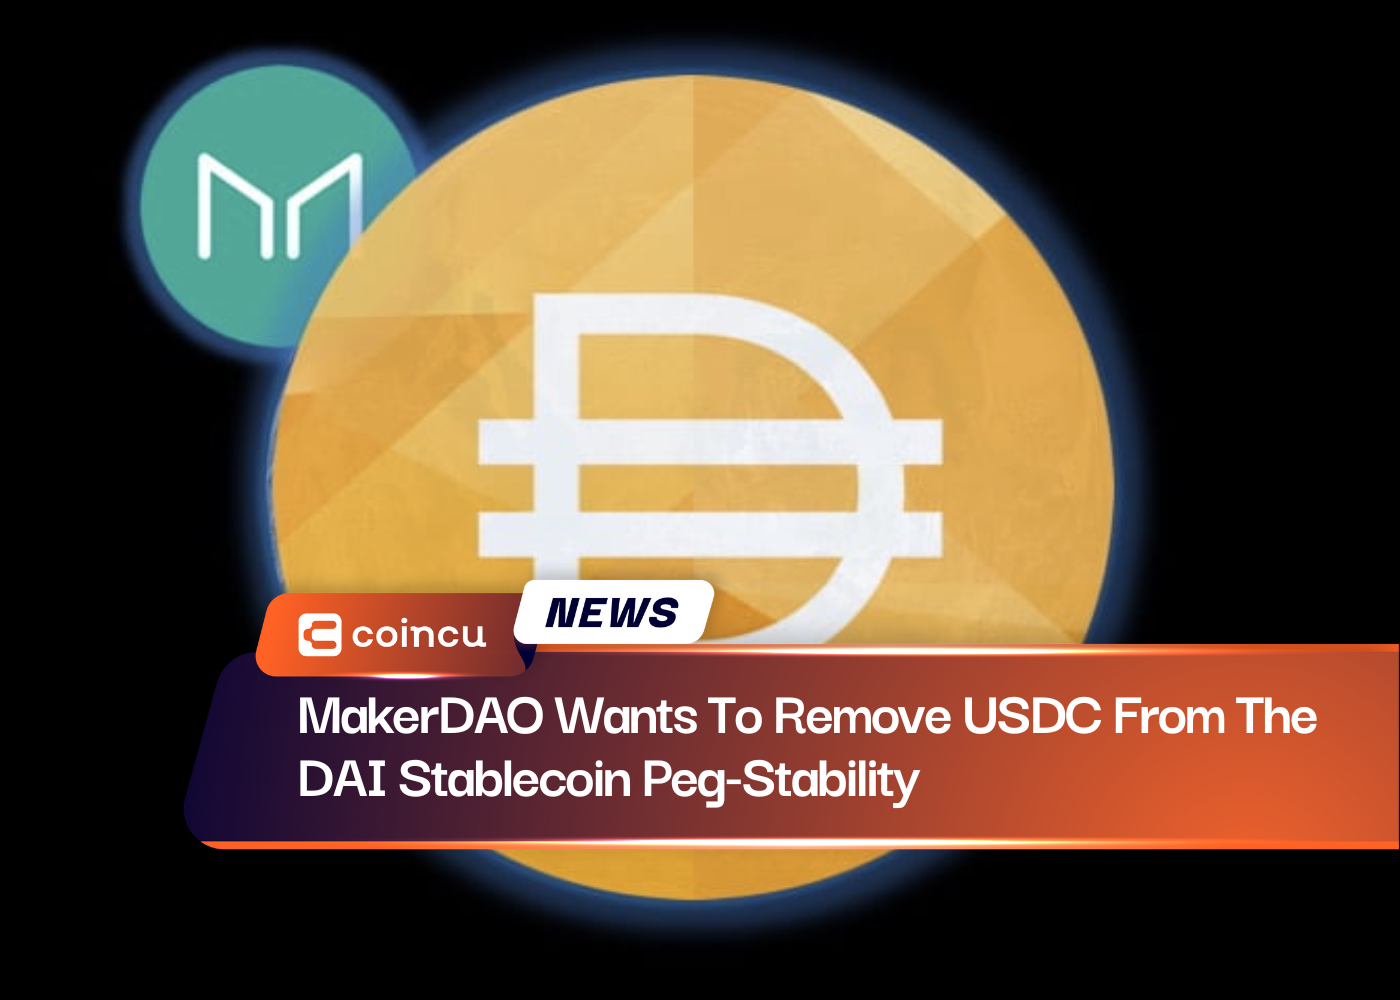 MakerDAO хочет удалить USDC из привязки стабильной монеты DAI